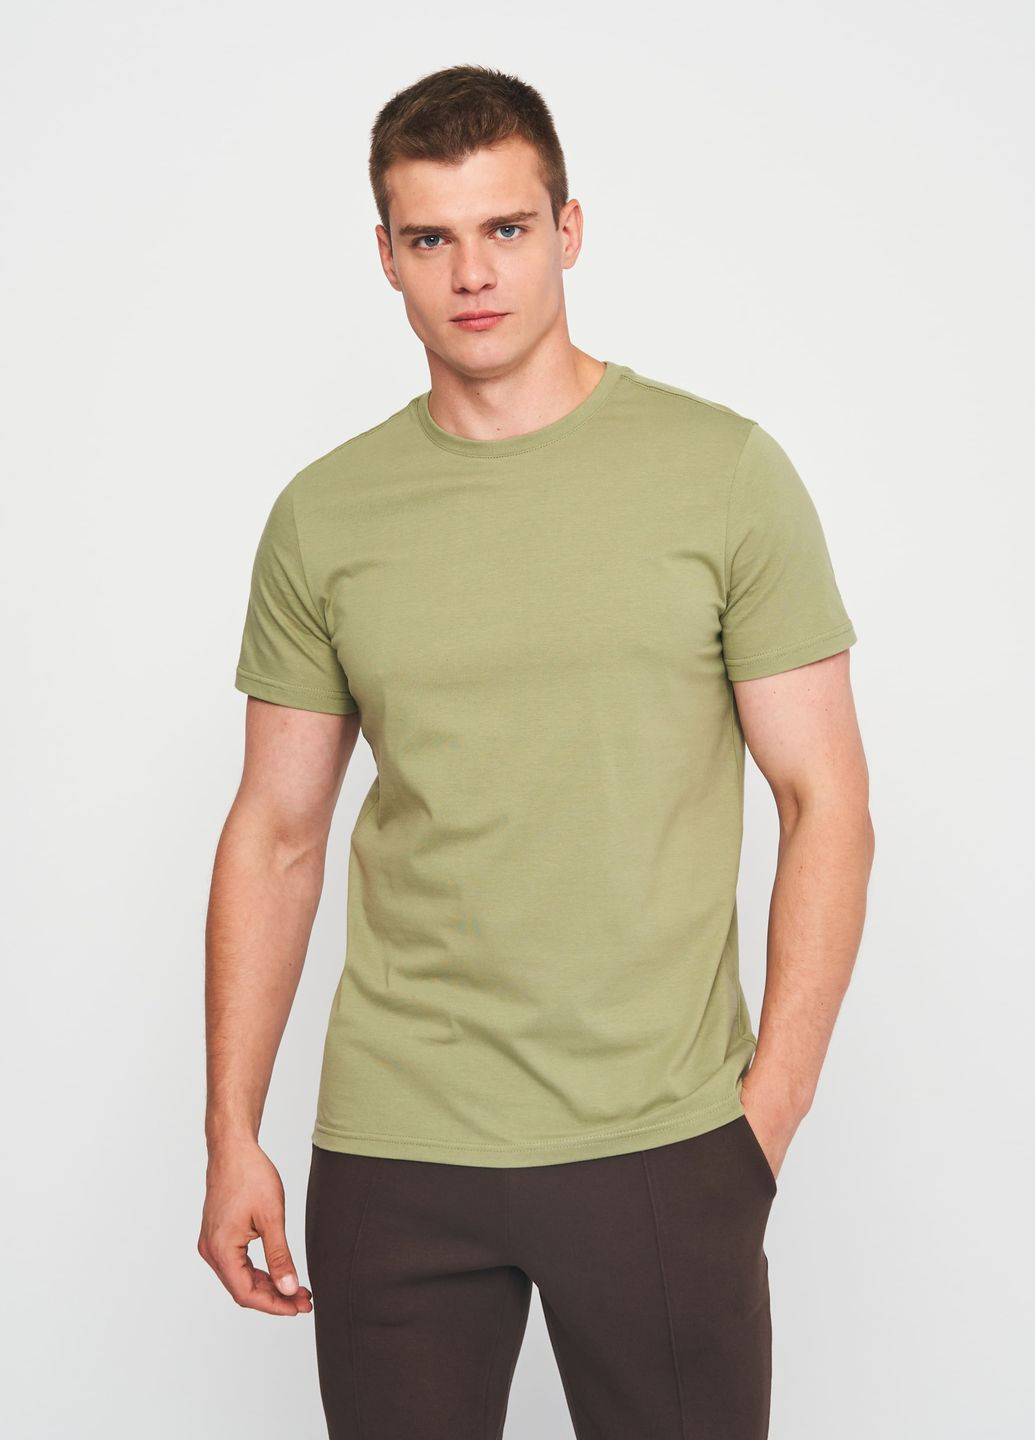 Хакі (оливкова) футболка для чоловіків з коротким рукавом Роза